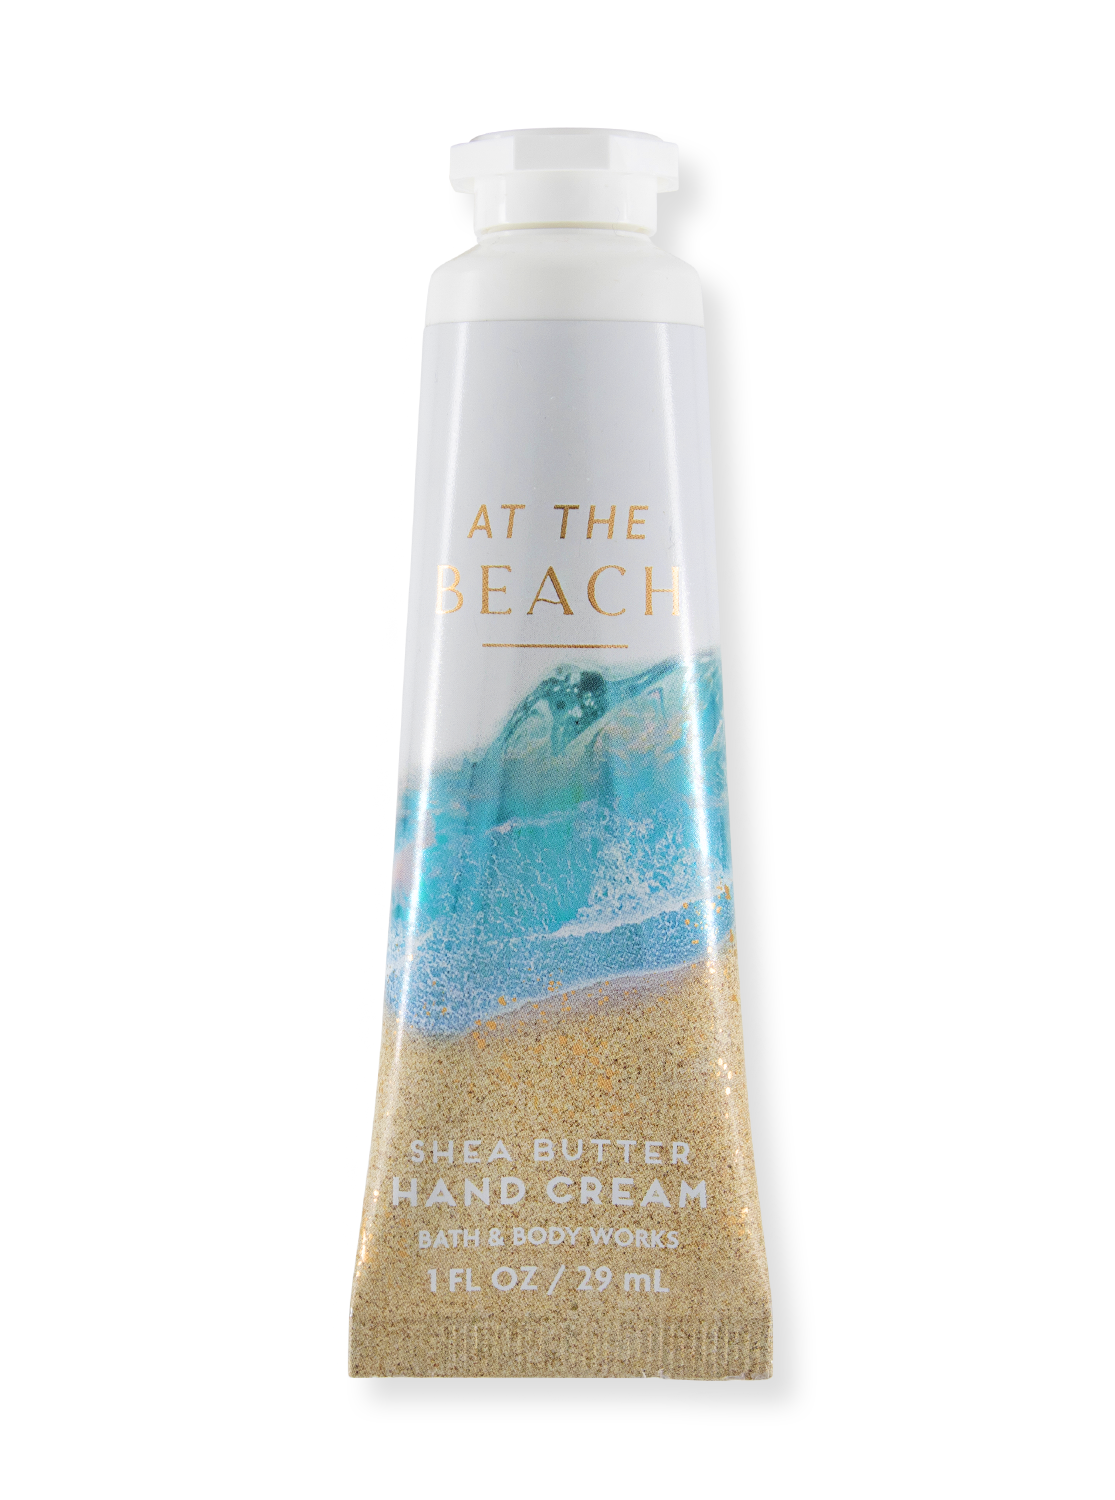 Hand cream - at the beach - 29ml